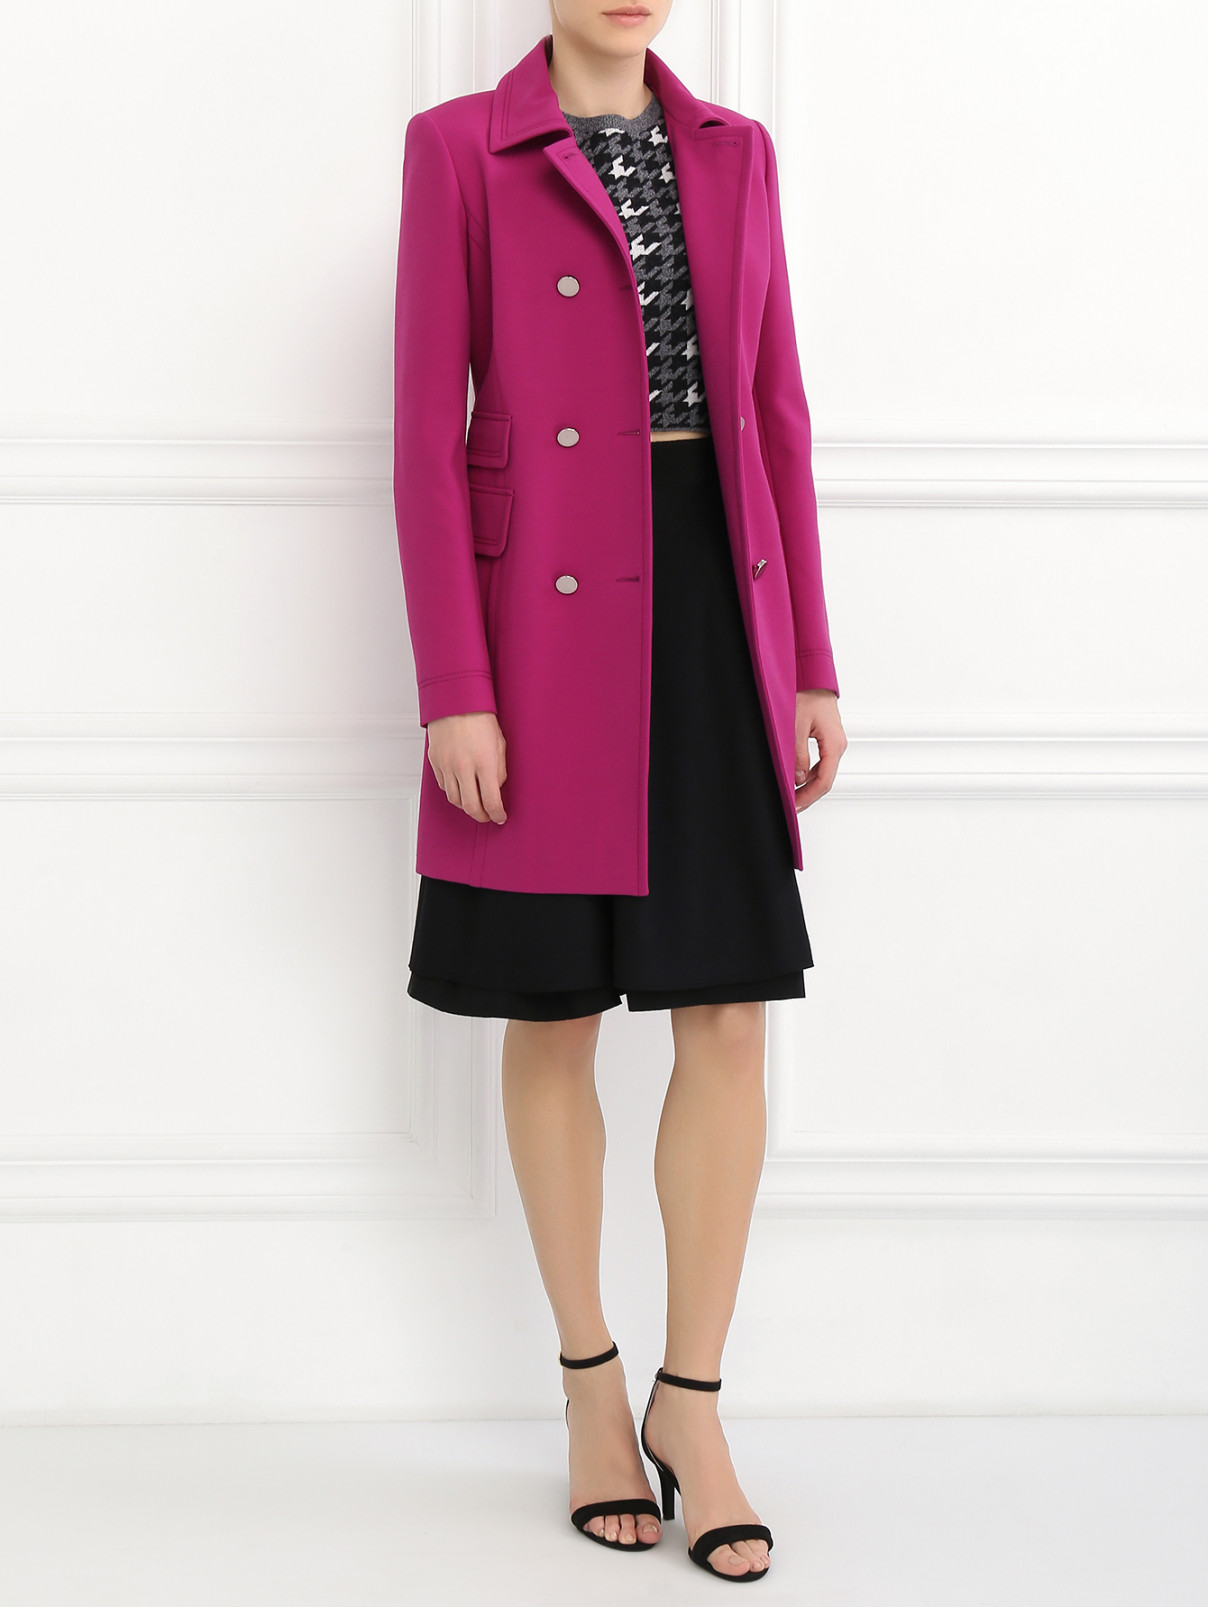 Пальто с металлической фурнитурой Barbara Bui  –  Модель Общий вид  – Цвет:  Розовый